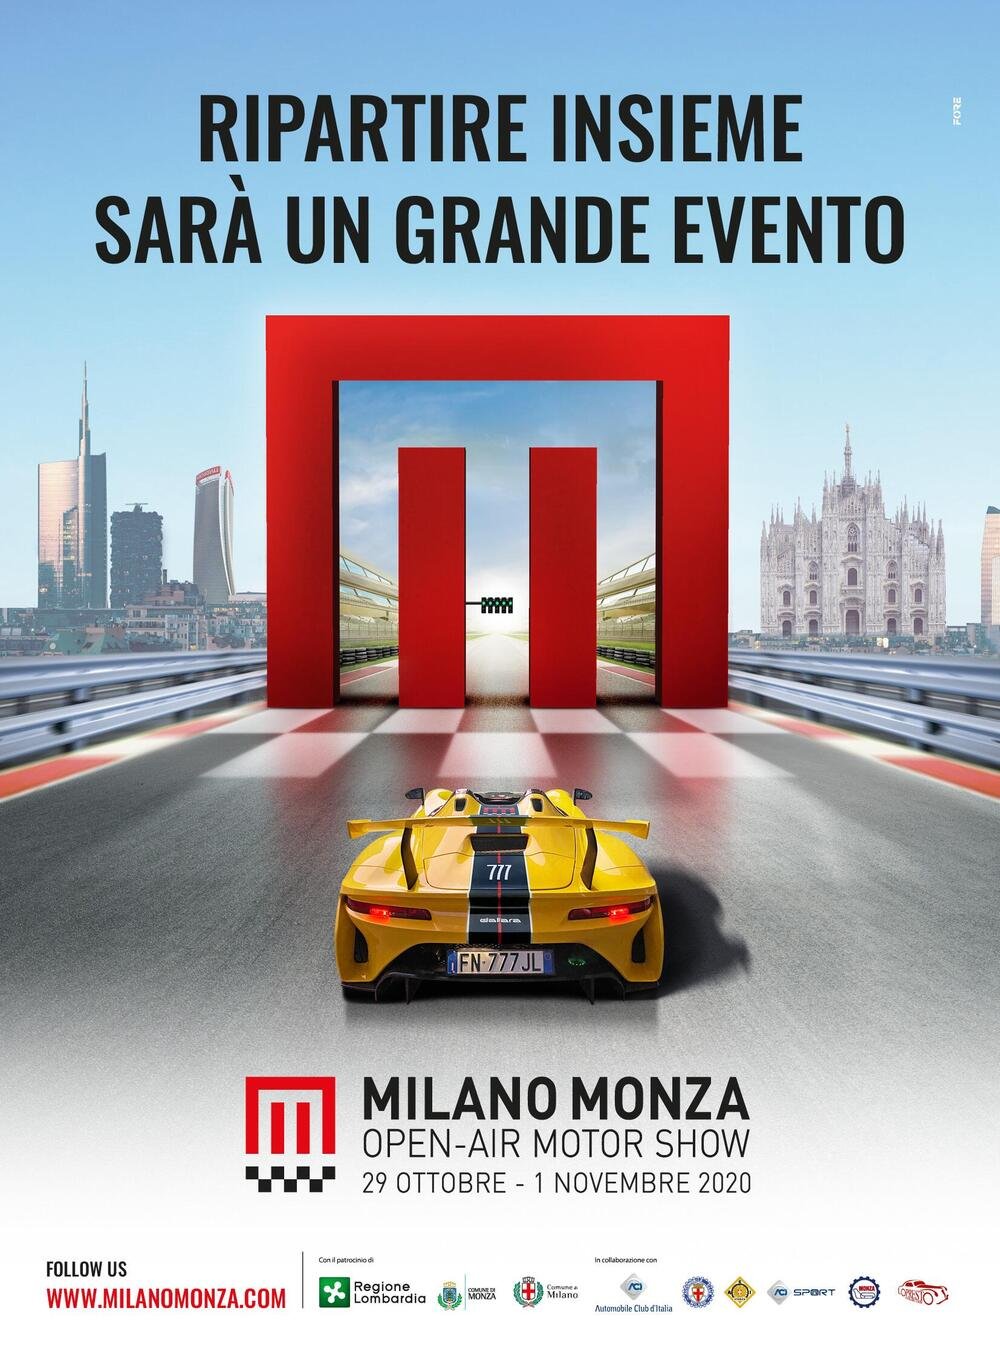 La nuova locandina del Milano Monza Open-Air Motor Show 2020